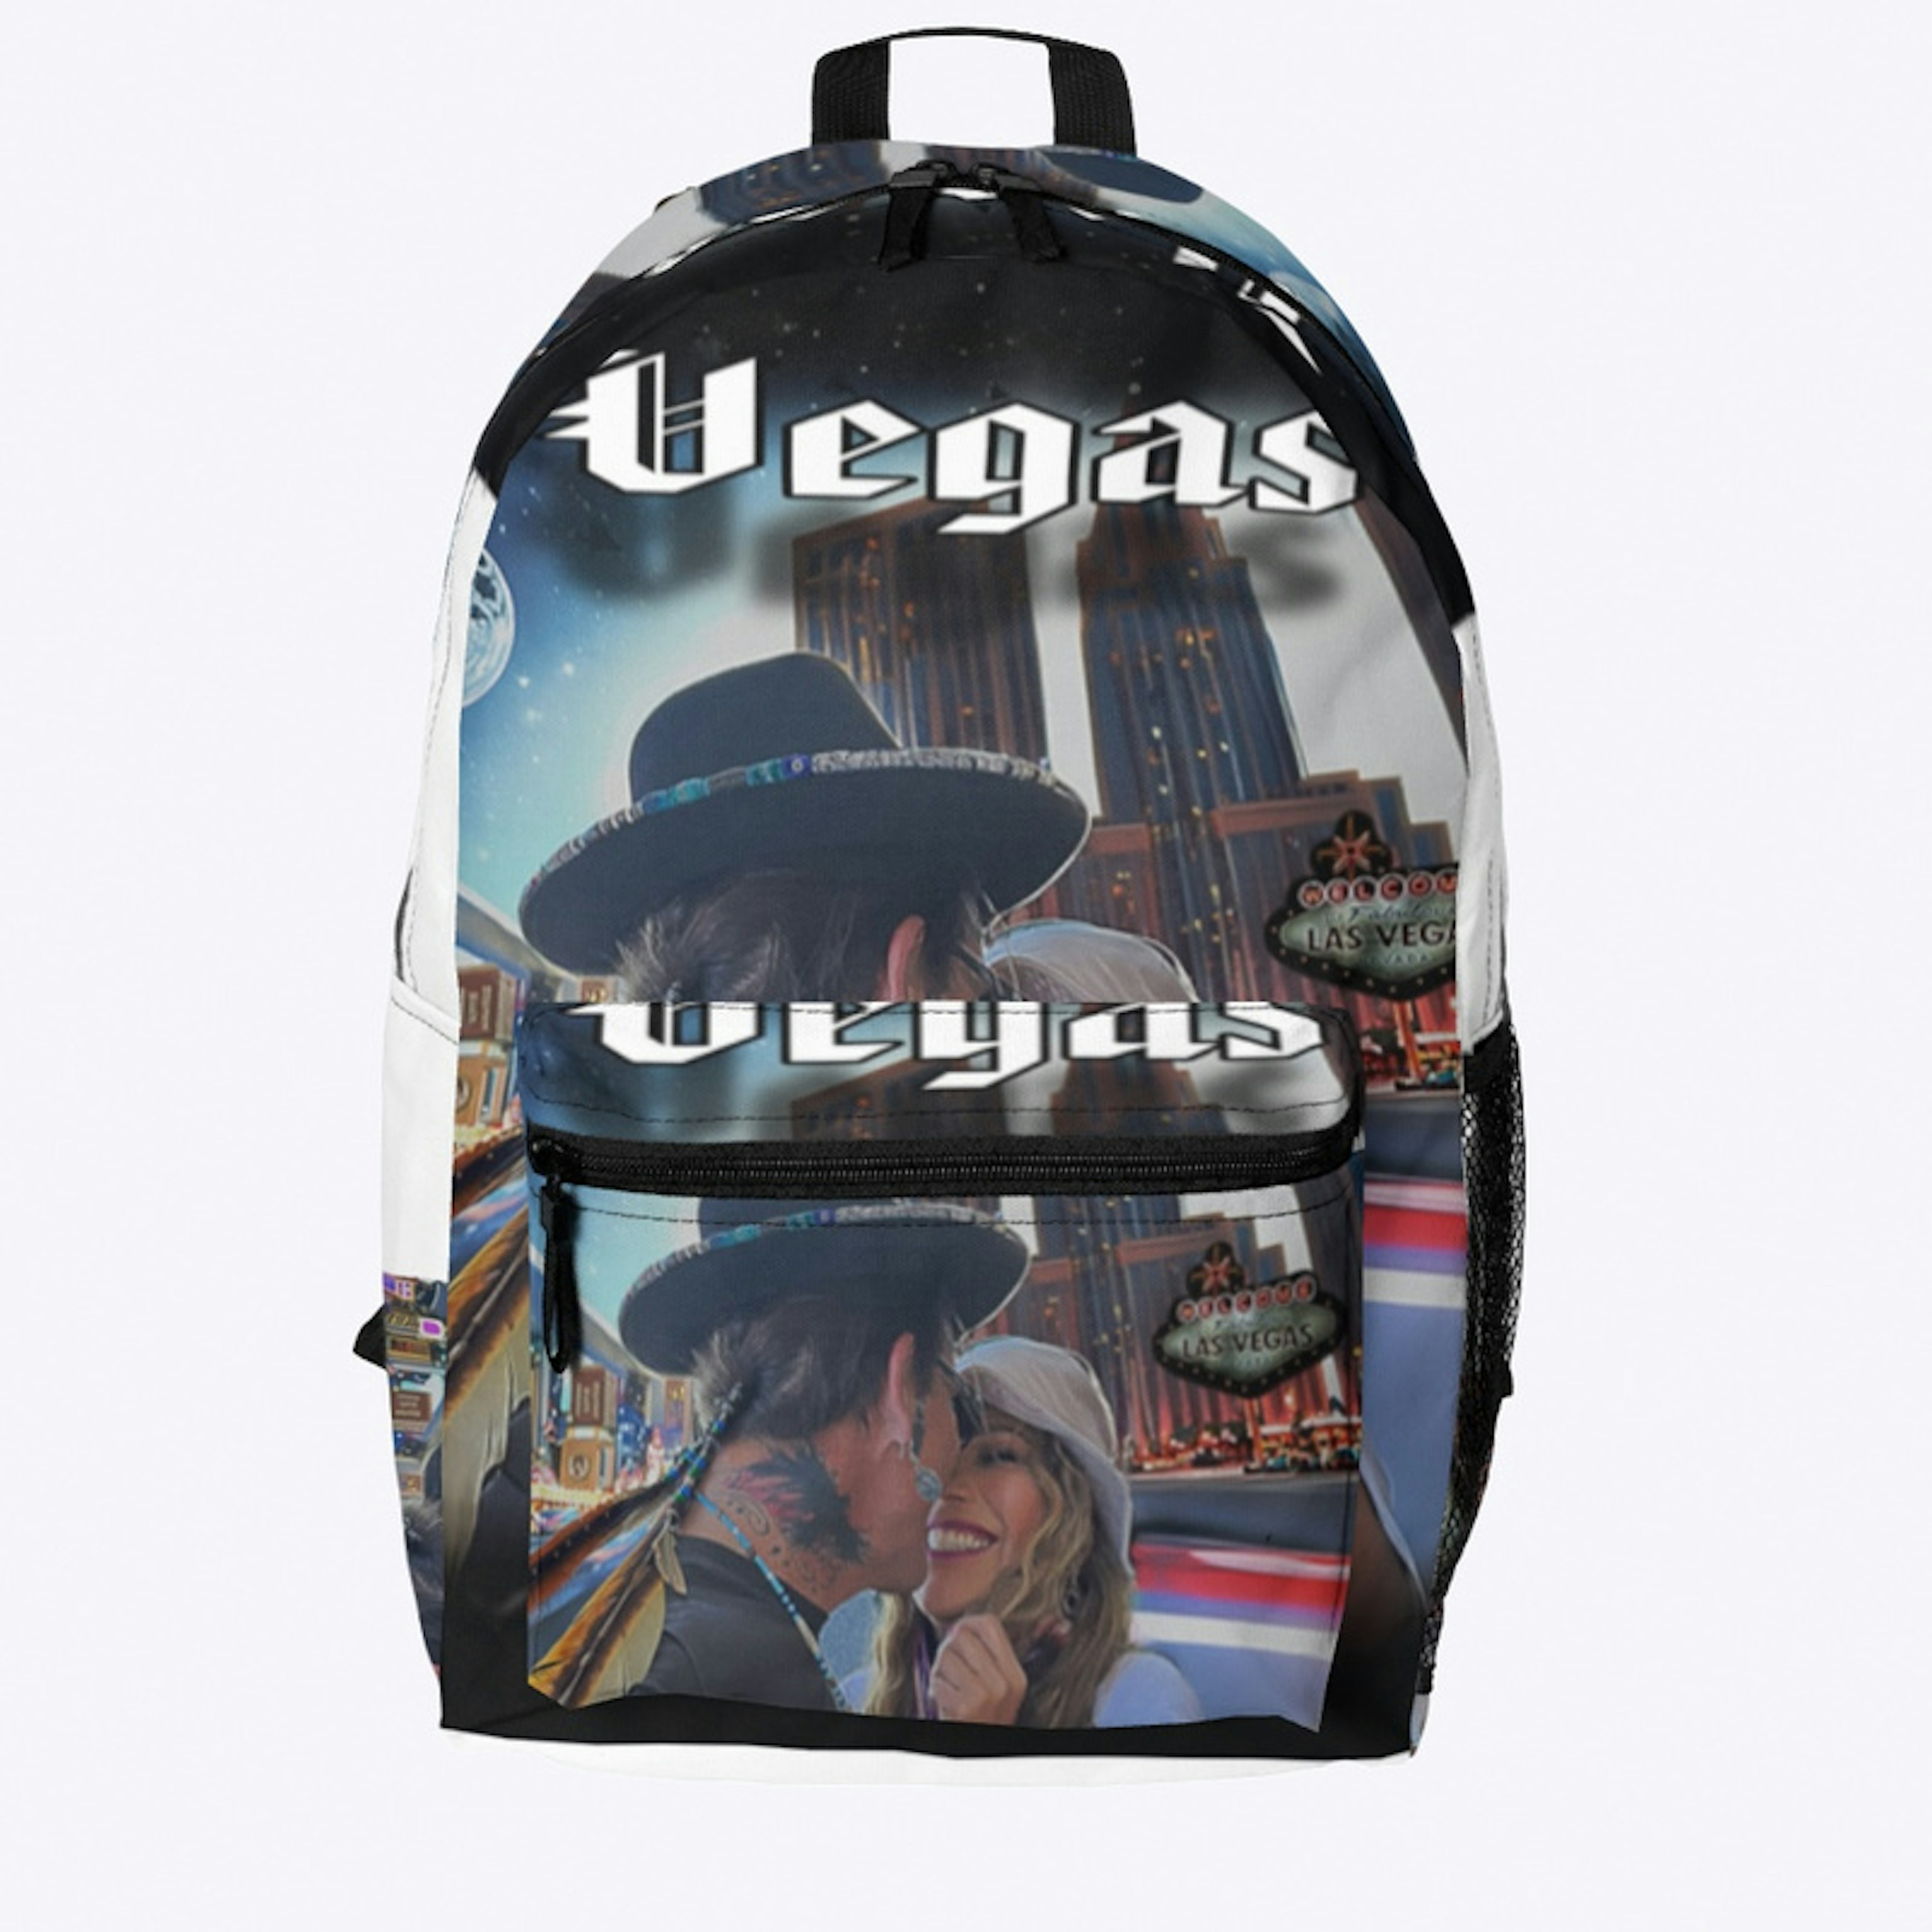 Sober Junkie "Vegas" backpack